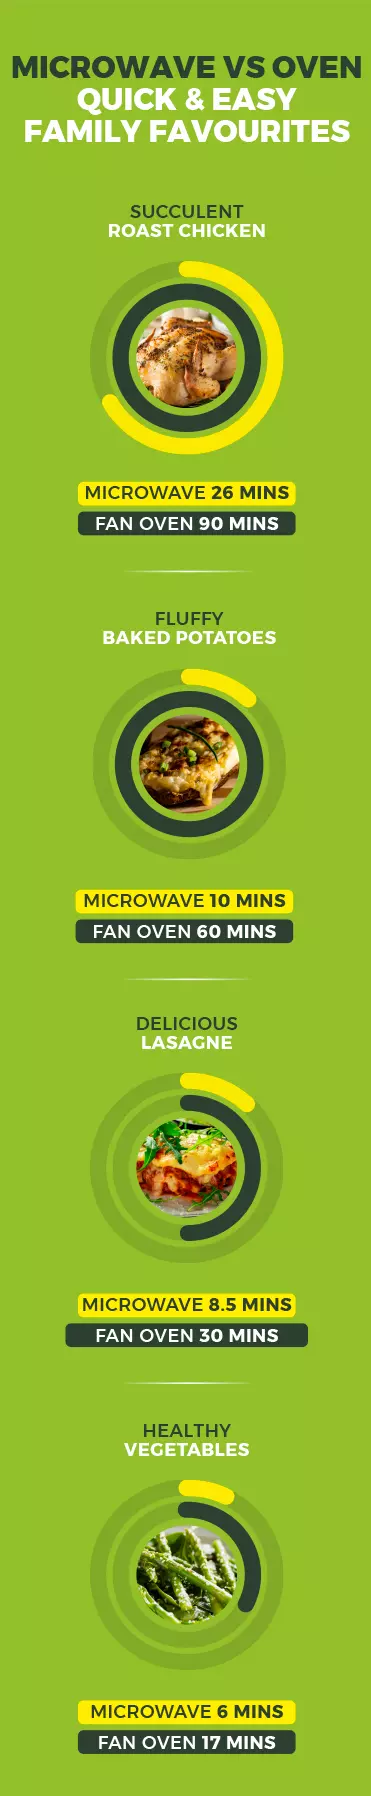 energy-saving-Microwave-vs-oven-mob.jpg